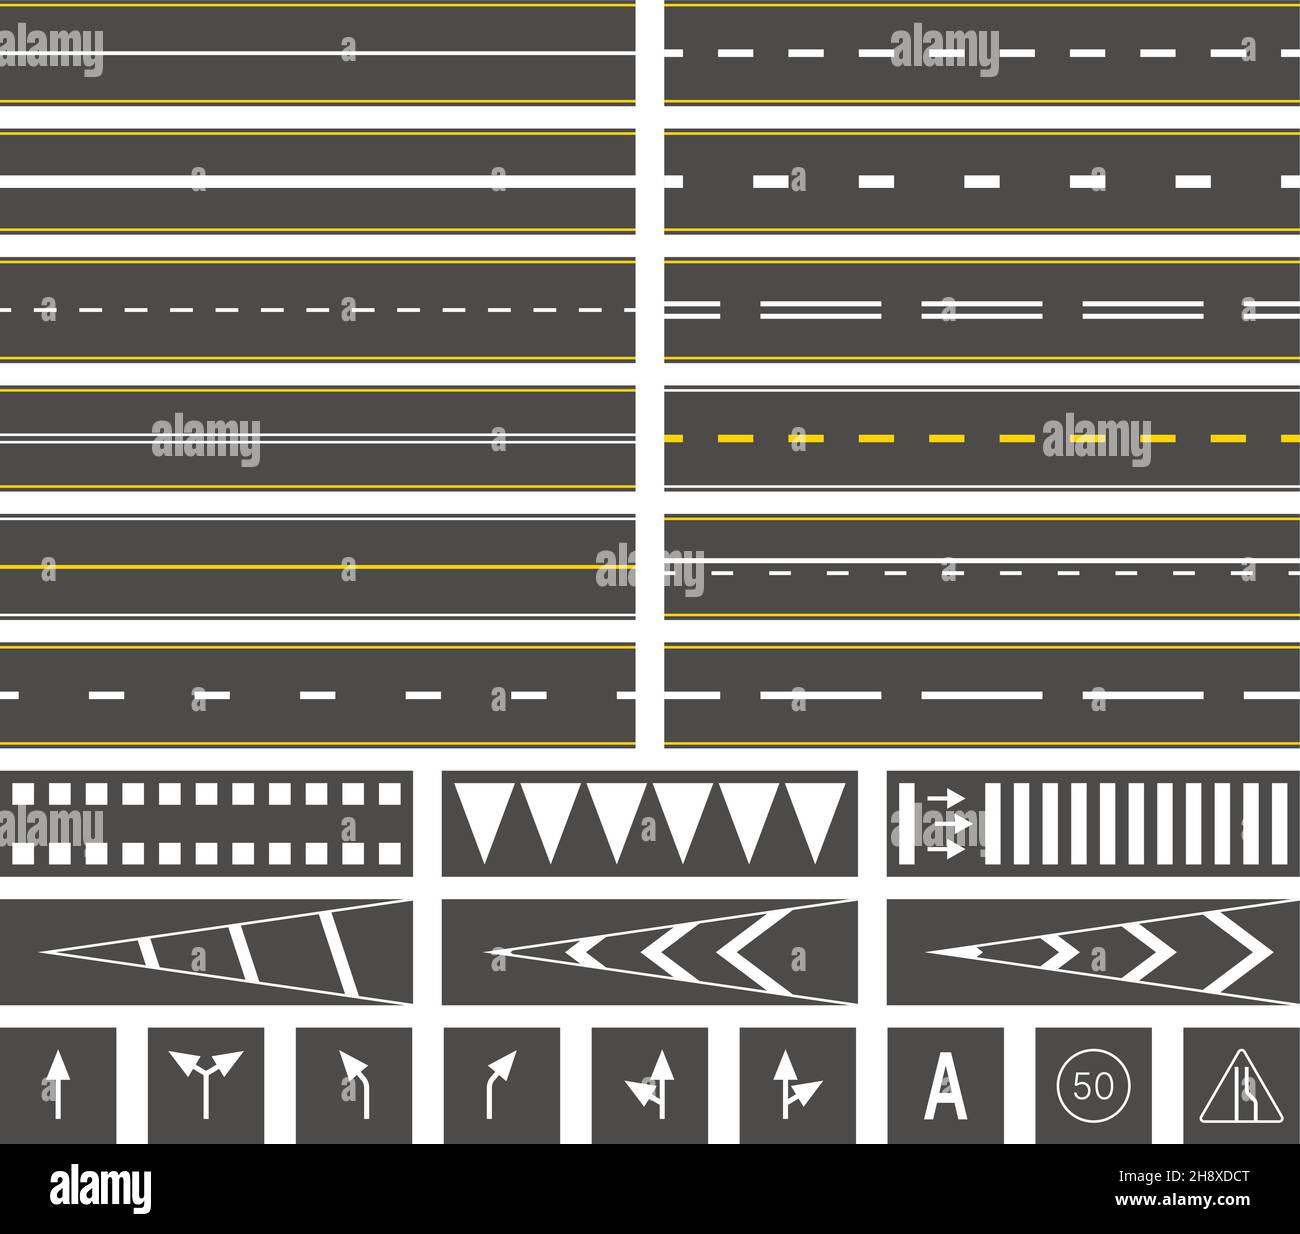 Straßenmarkierungen. Straßenlinien auf Asphalt Busbahnhof markiert Geschwindigkeit Zeichen grellen Vektor-Illustrationen gesetzt Stock Vektor